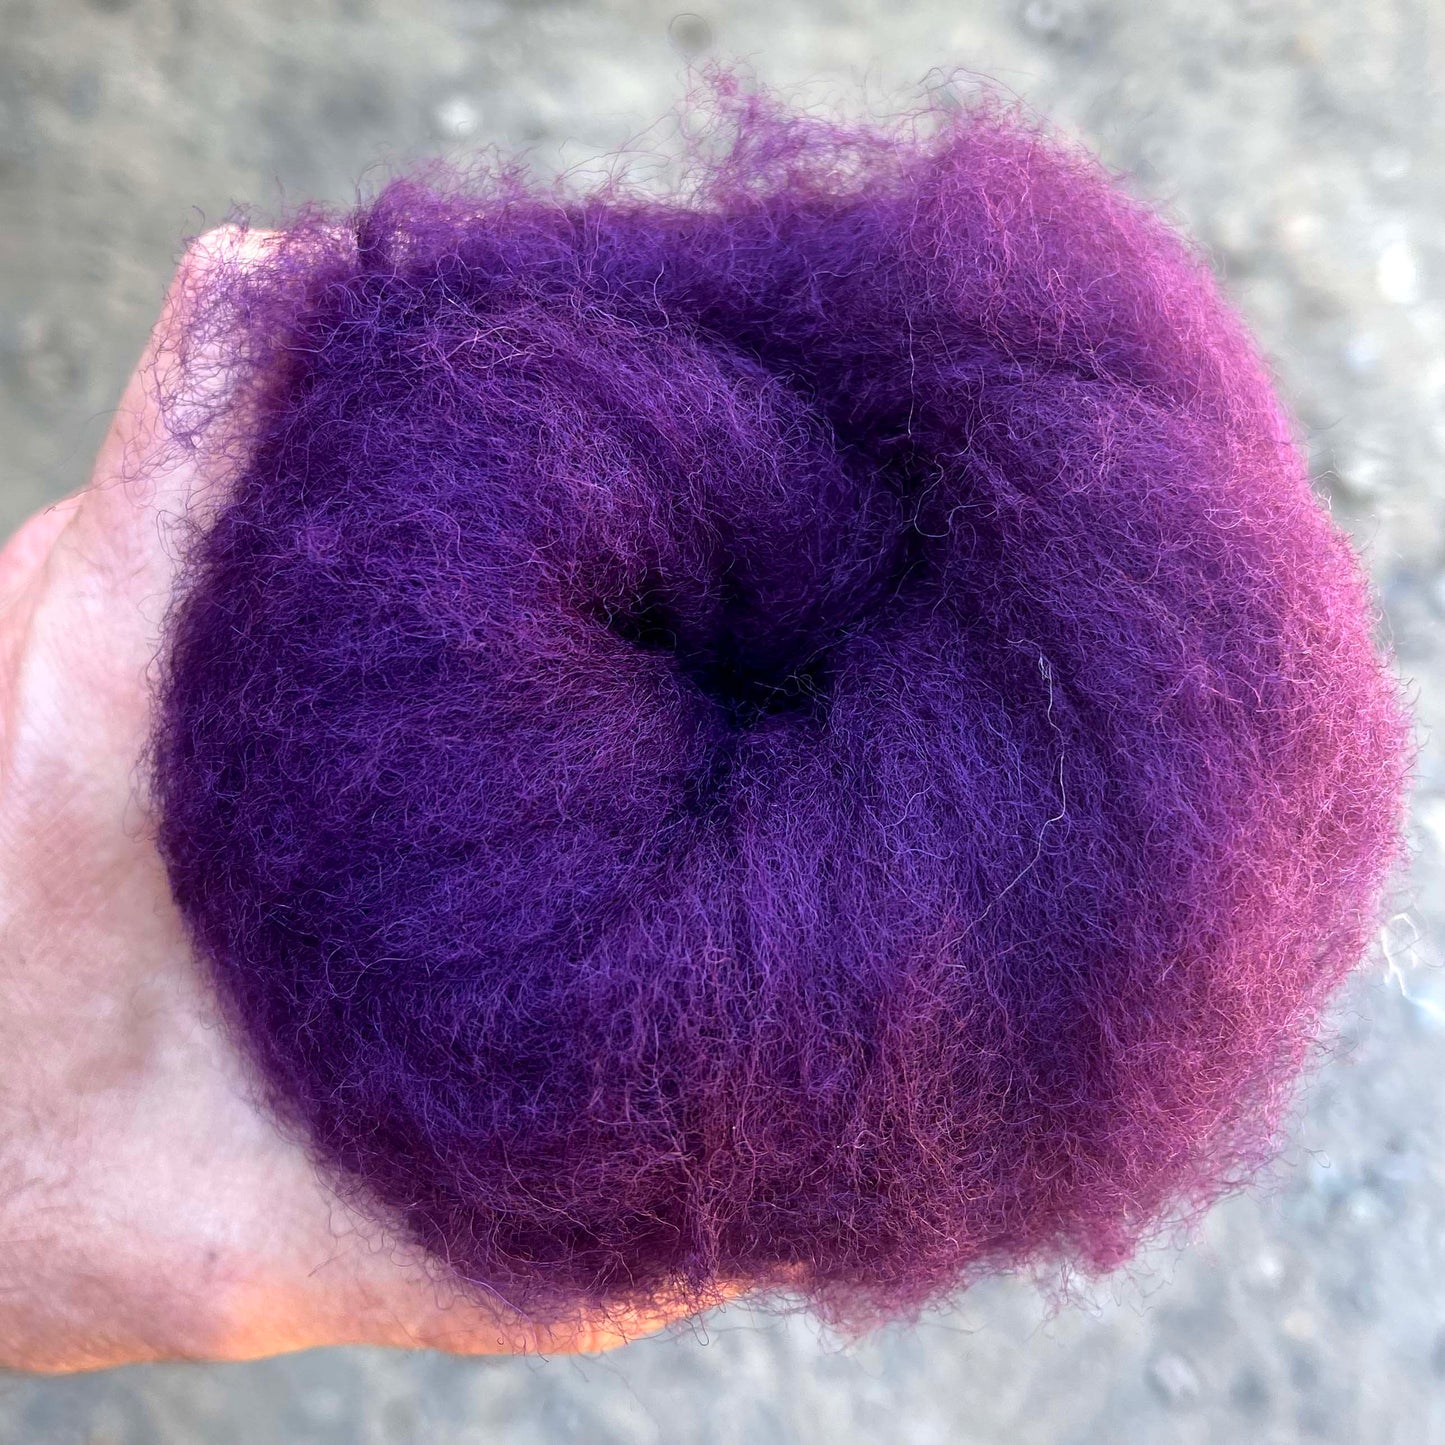 Carded Wool For Felting, Needle Felting Batting, Aubergine  ( 106 )